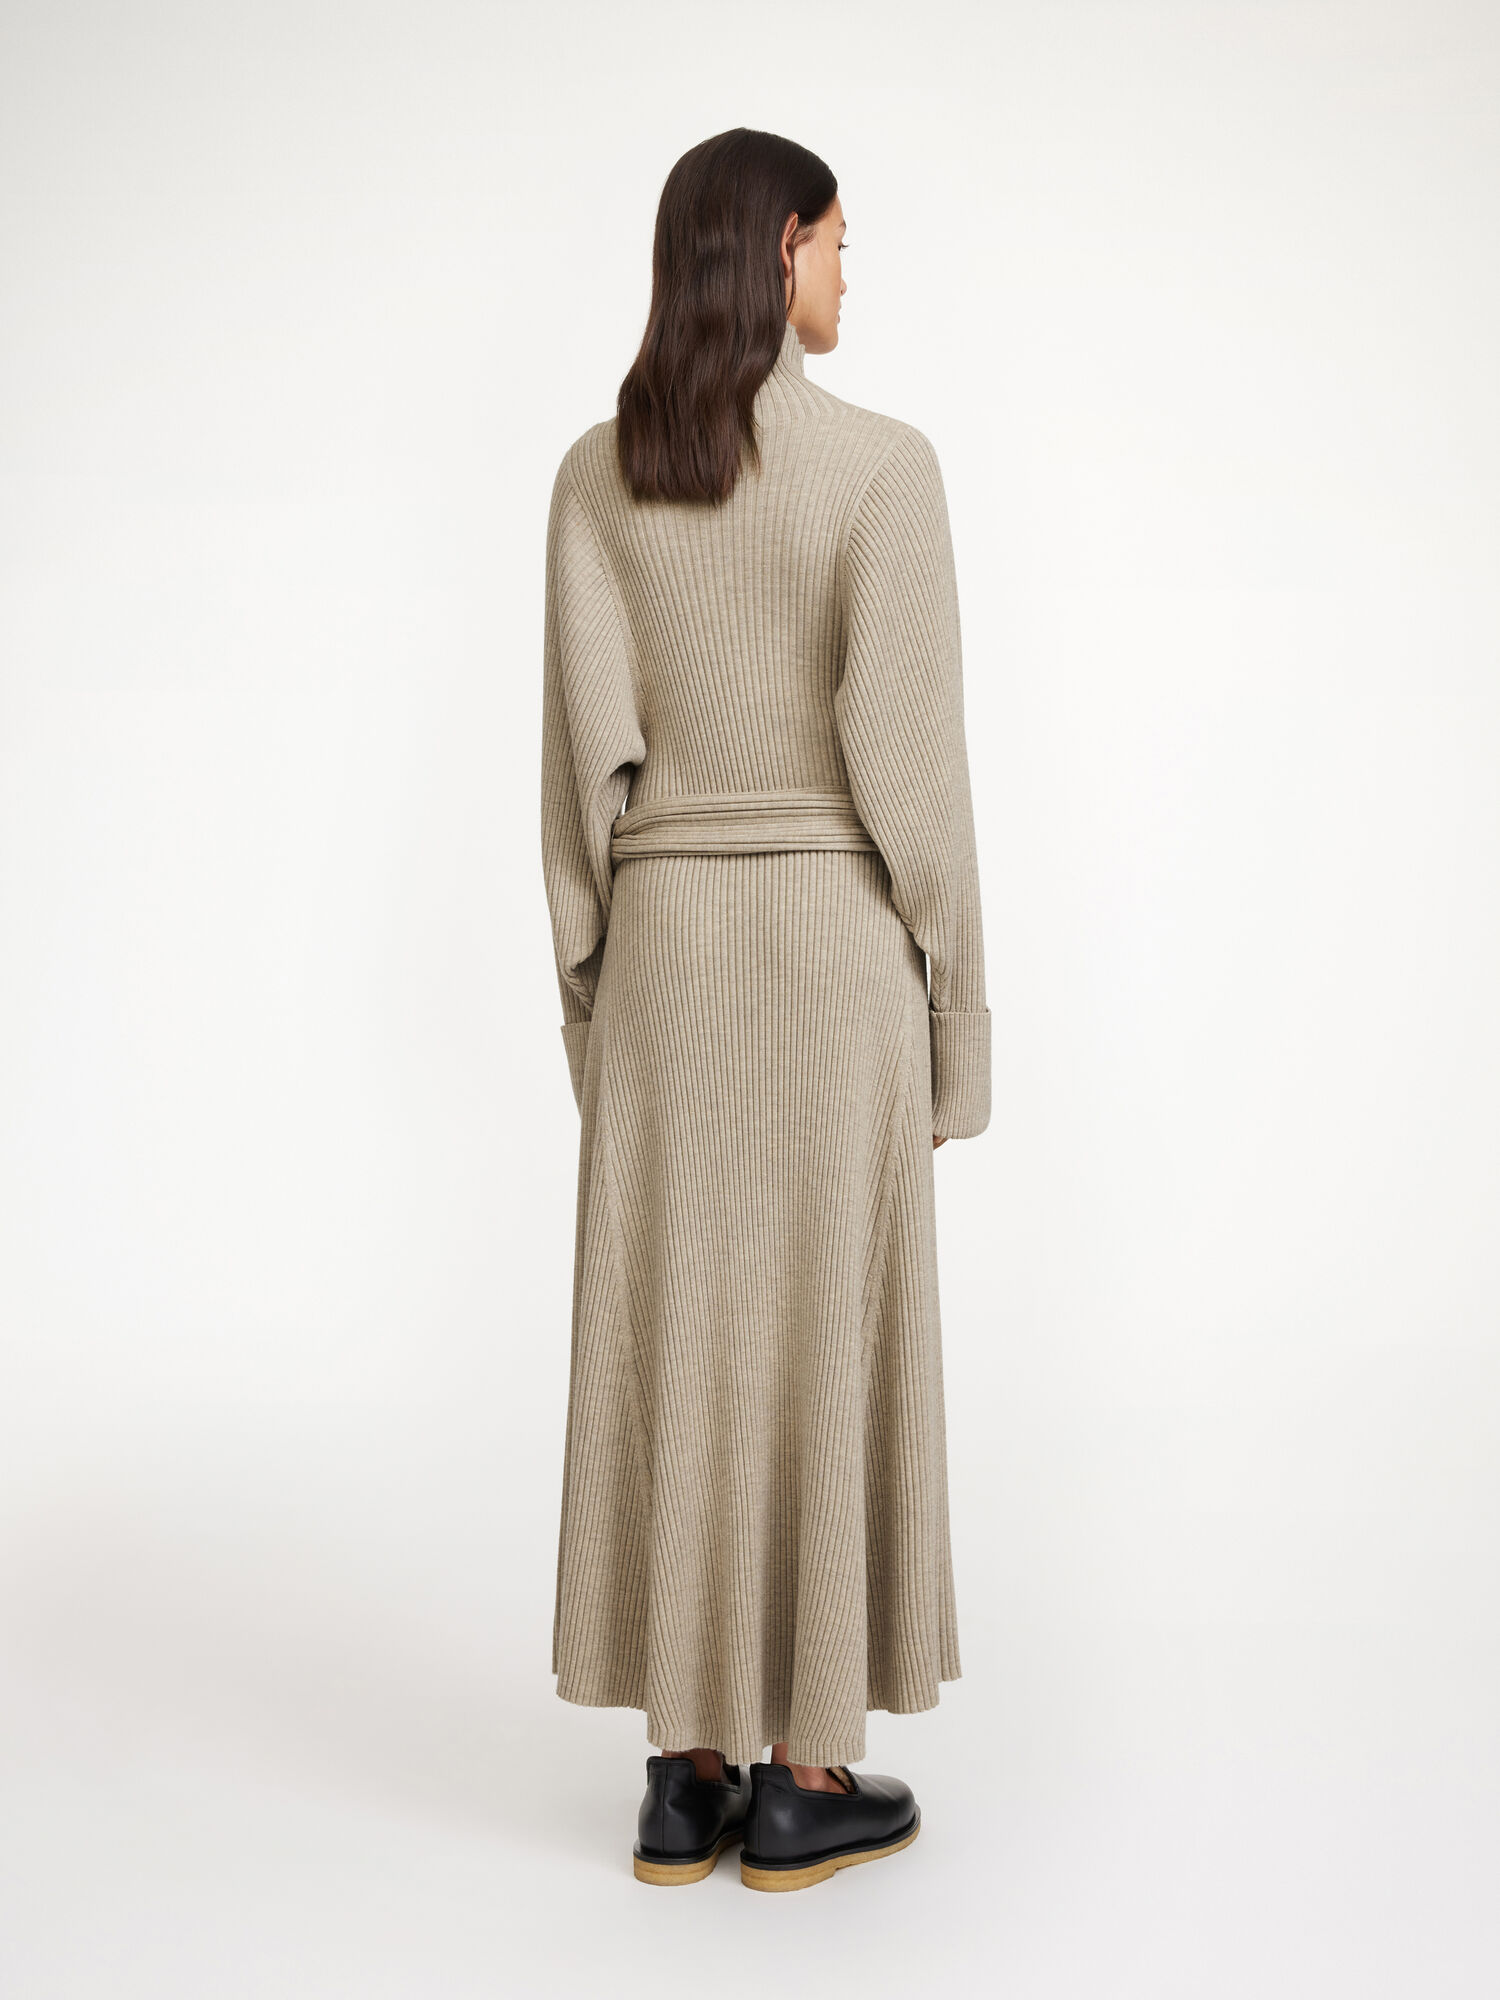 Sloana merino wool dress